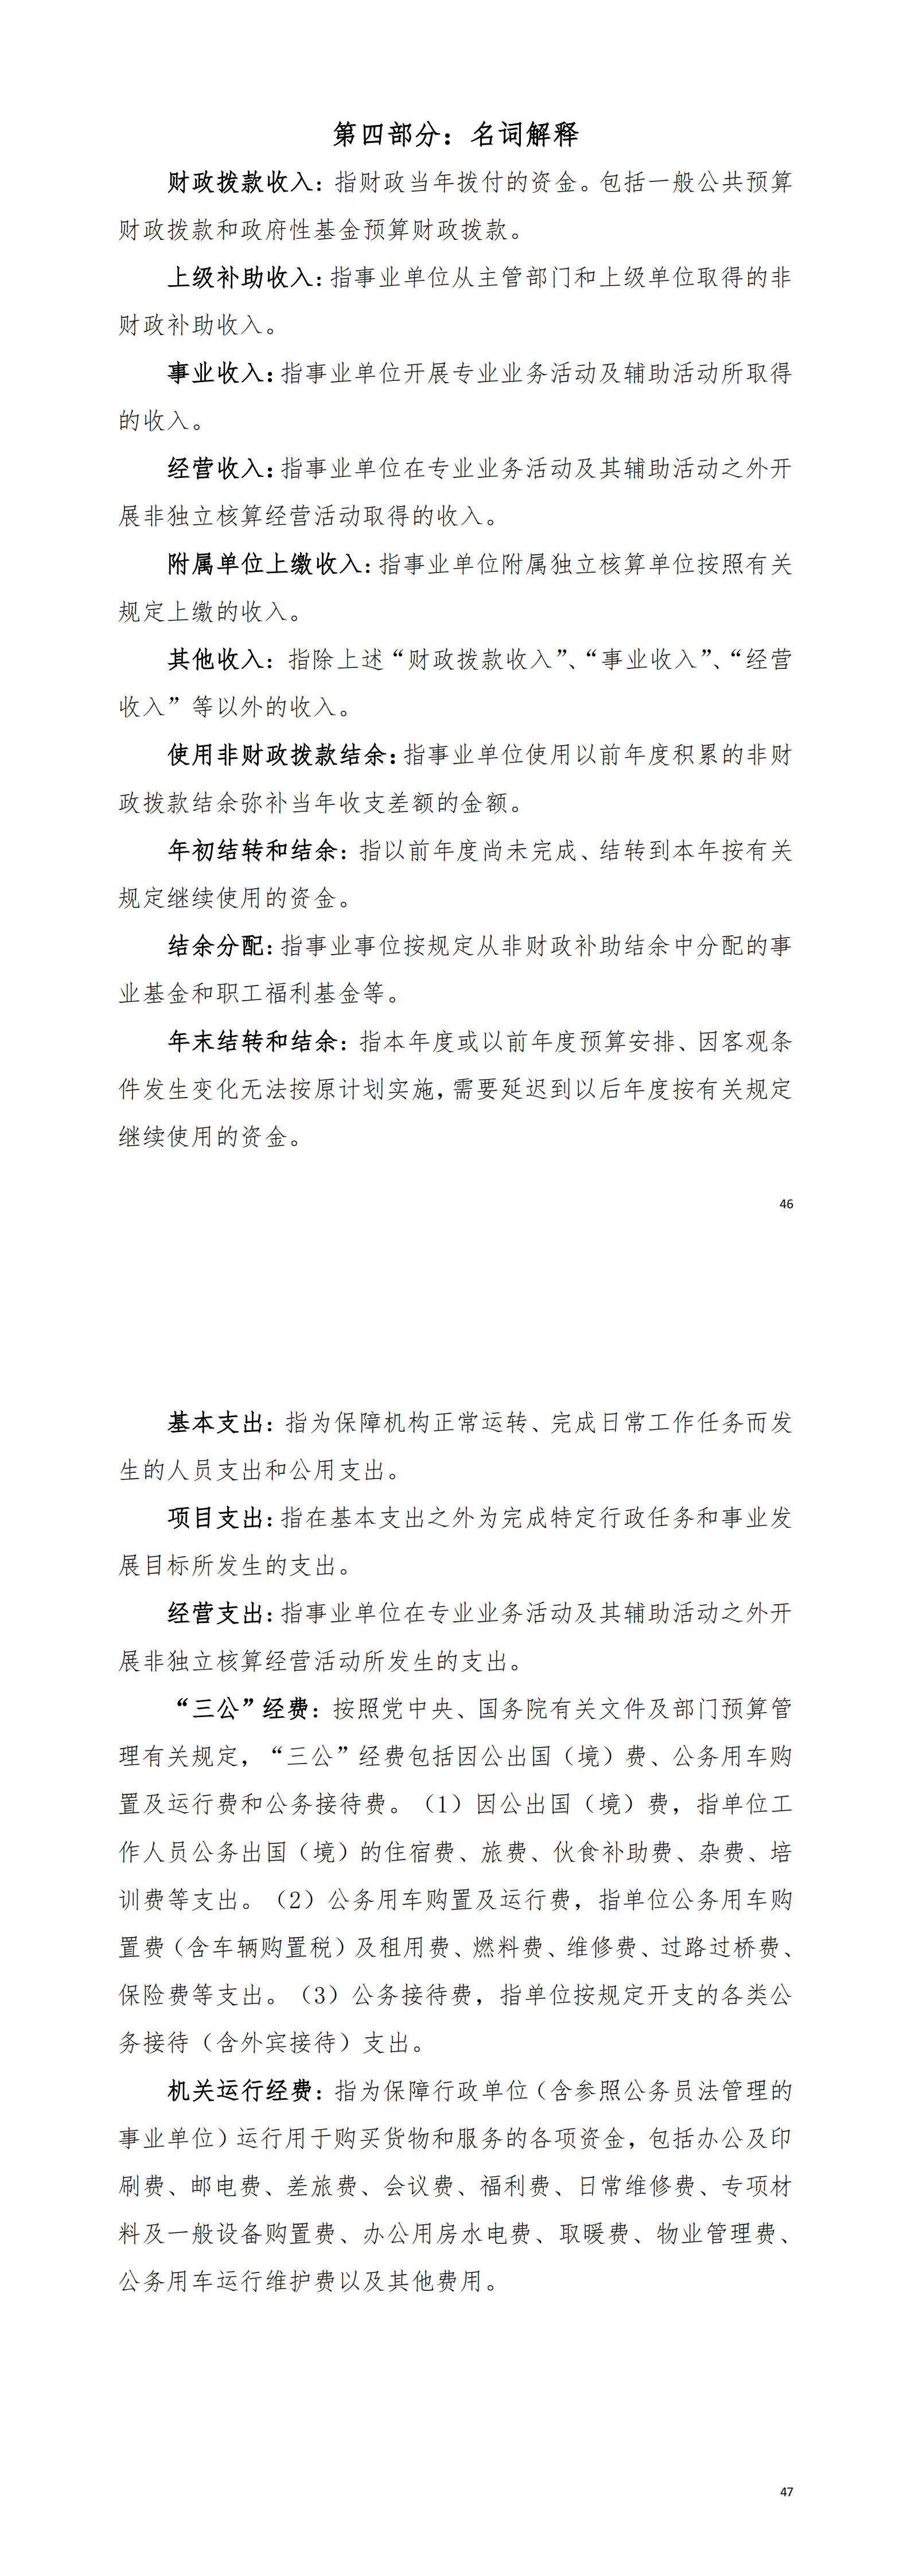 2021年阳江高新技术产业开发区人力资源综合训练中心部门决算_03.png